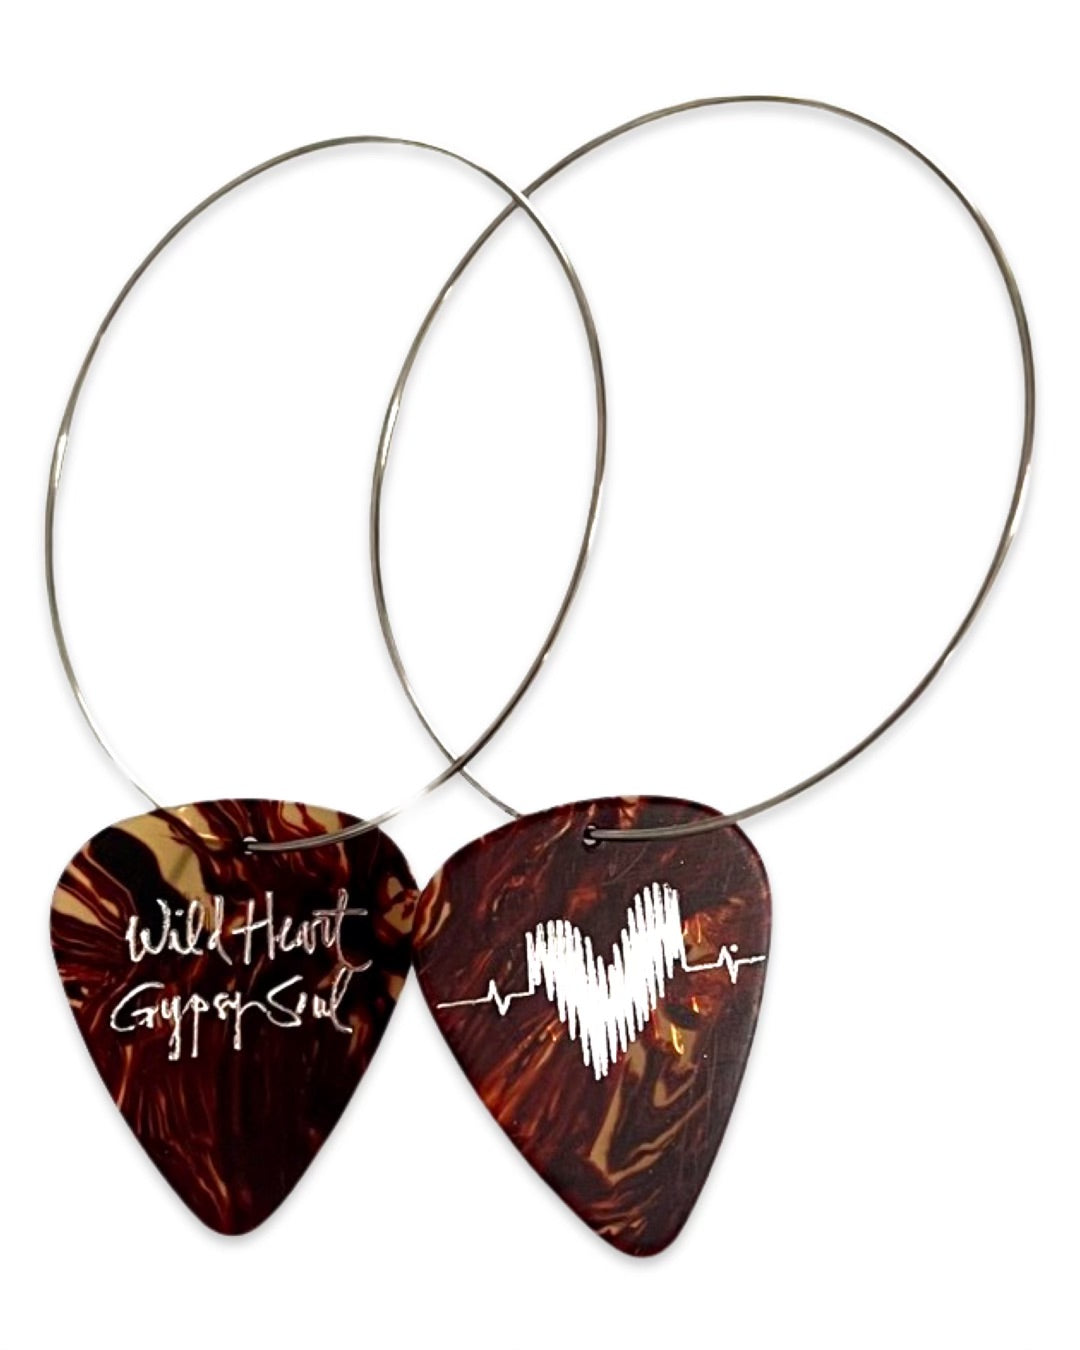 WS Wild Heart Gypsy Soul Tortoise Reversible Single Guitar Pick Earrings